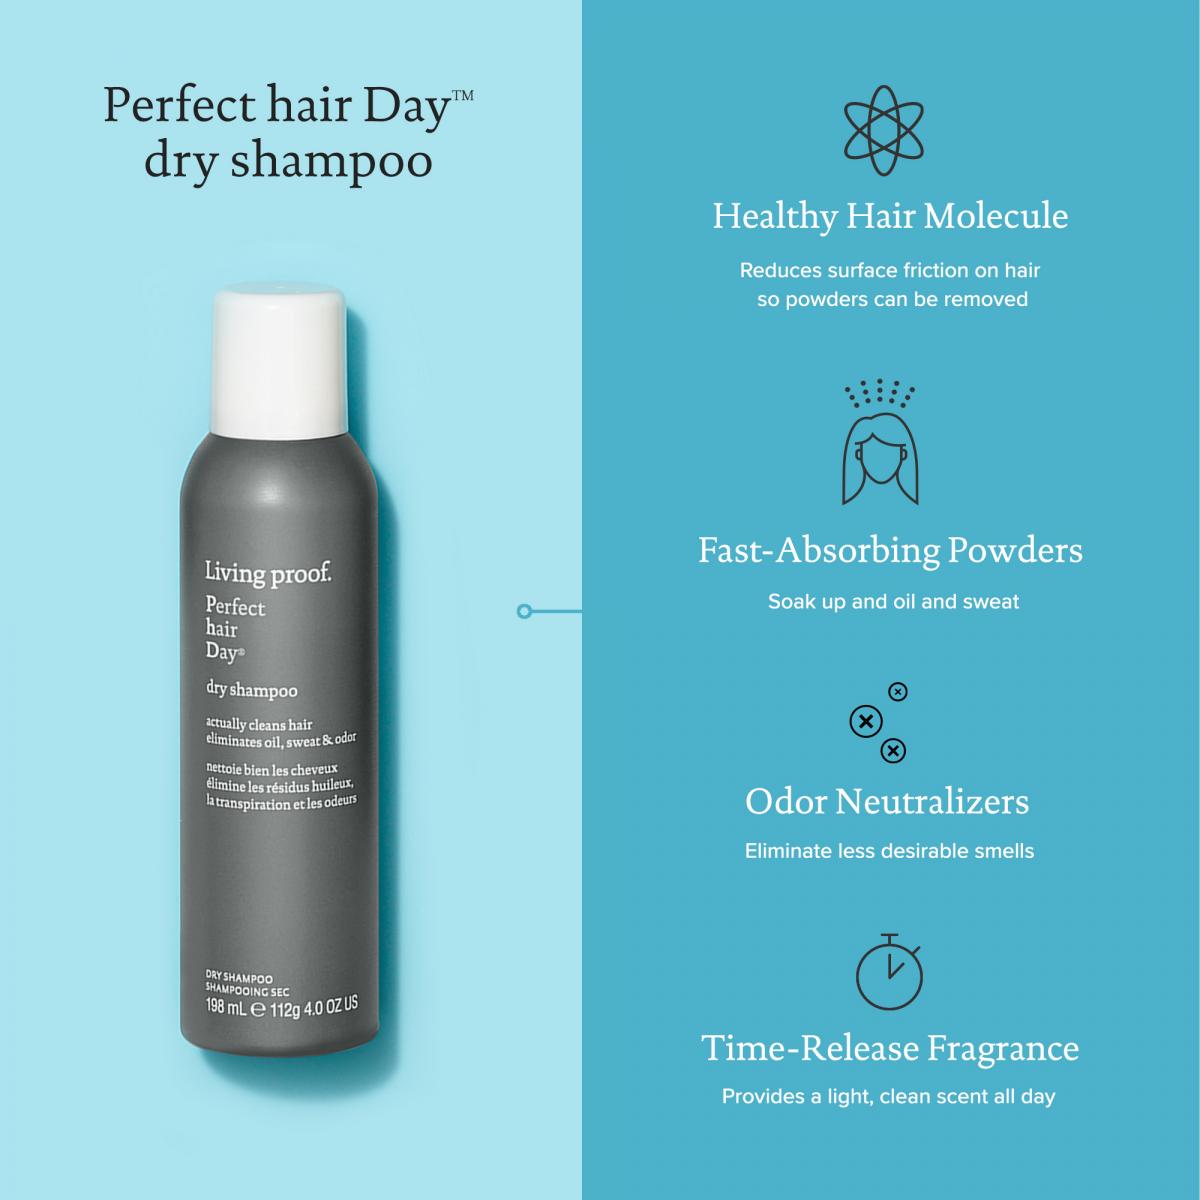 Living Proof Dry Shampoo - Köp 3 Betala för 2 - Hairsale.se